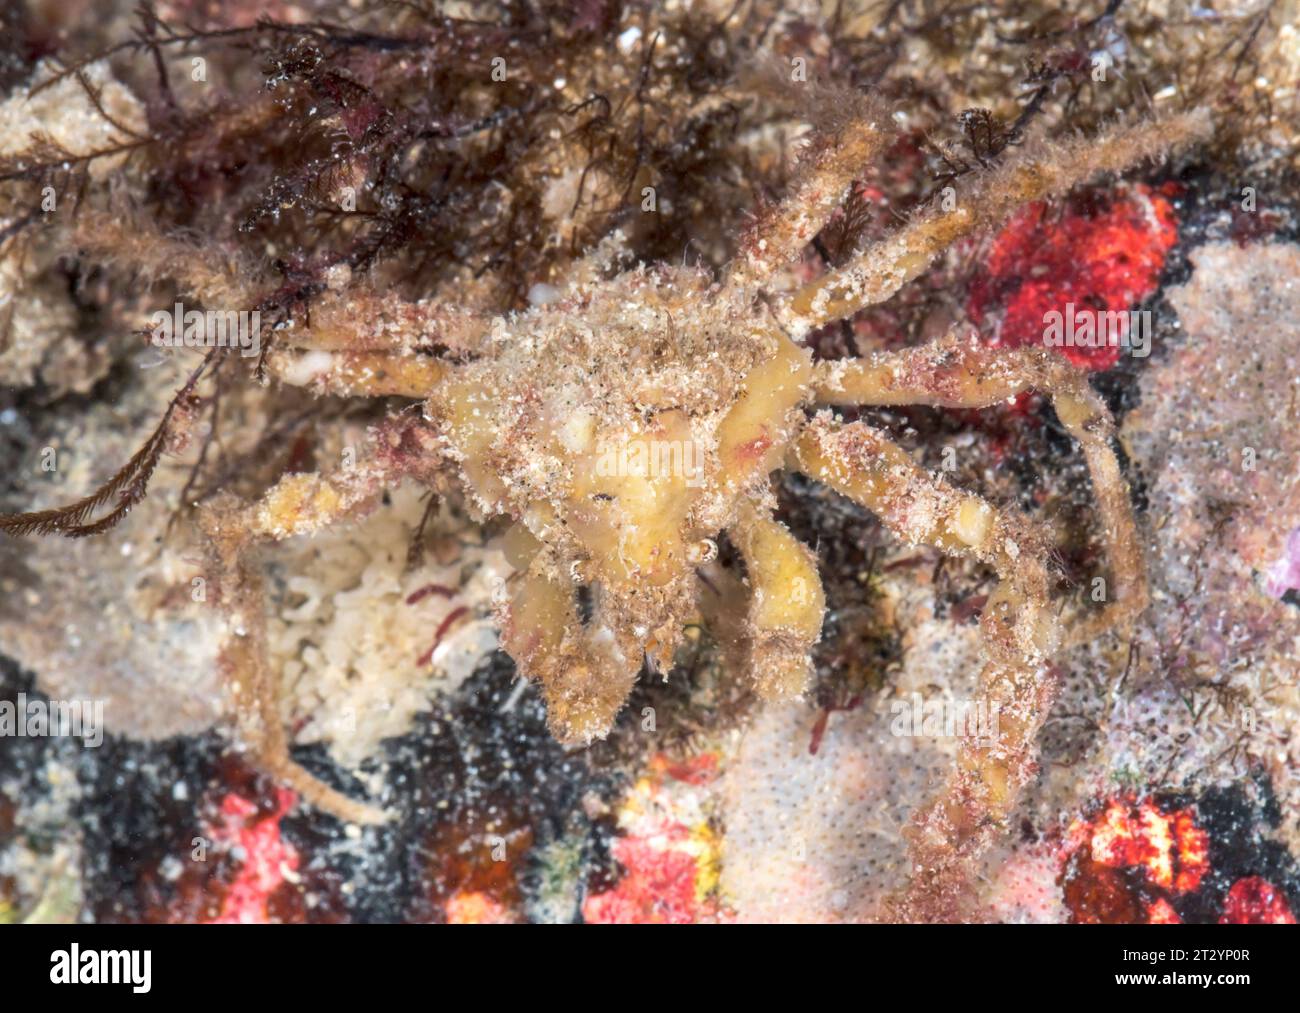 Crabe araignée Scorpion camouflé avec des éponges (Inachus dorsettensis), Inachidae, Decapoda, crustacé. Sussex, Royaume-Uni Banque D'Images